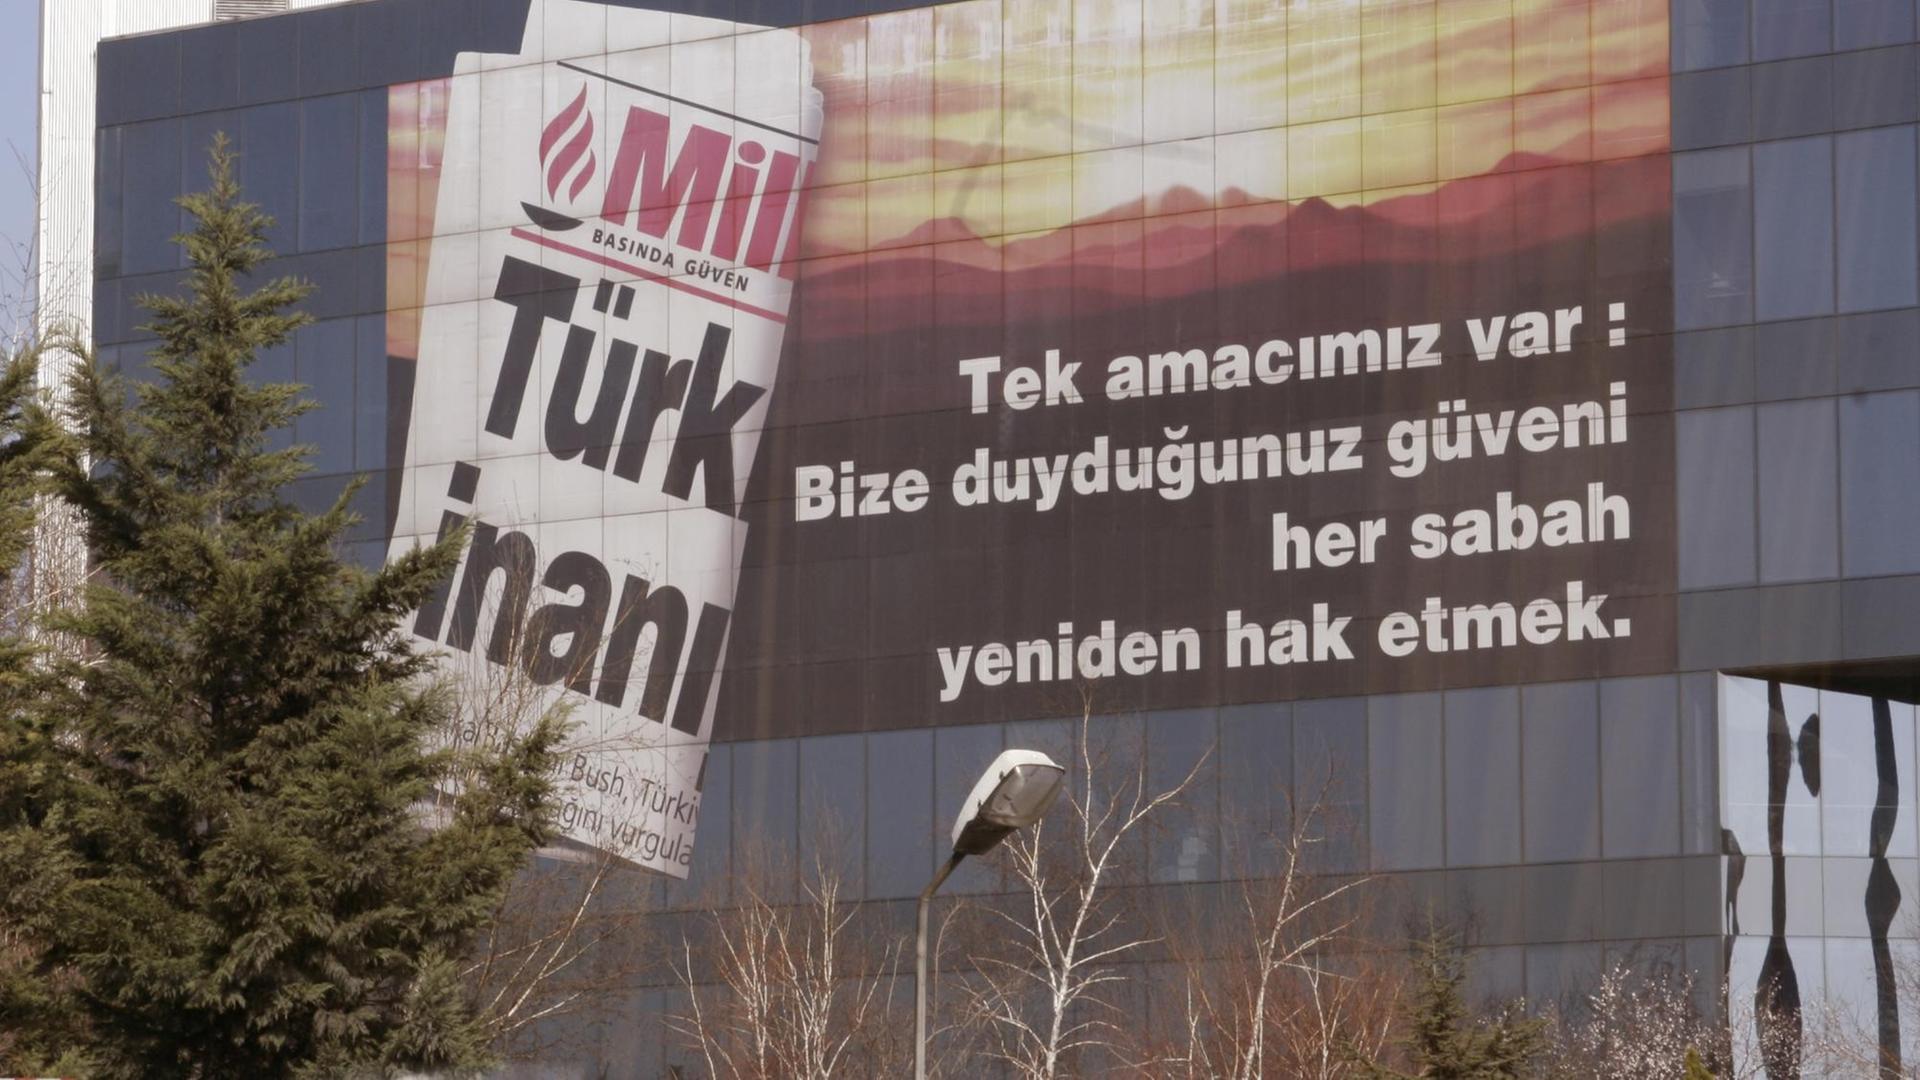 Gebäude der Zeitung Milliyet des türkischen Medienkonzerns Dogan Medya in Istanbul, aufgenommen am 20.03.2006. Foto: Robert B. Fishman +++(c) dpa - Report+++